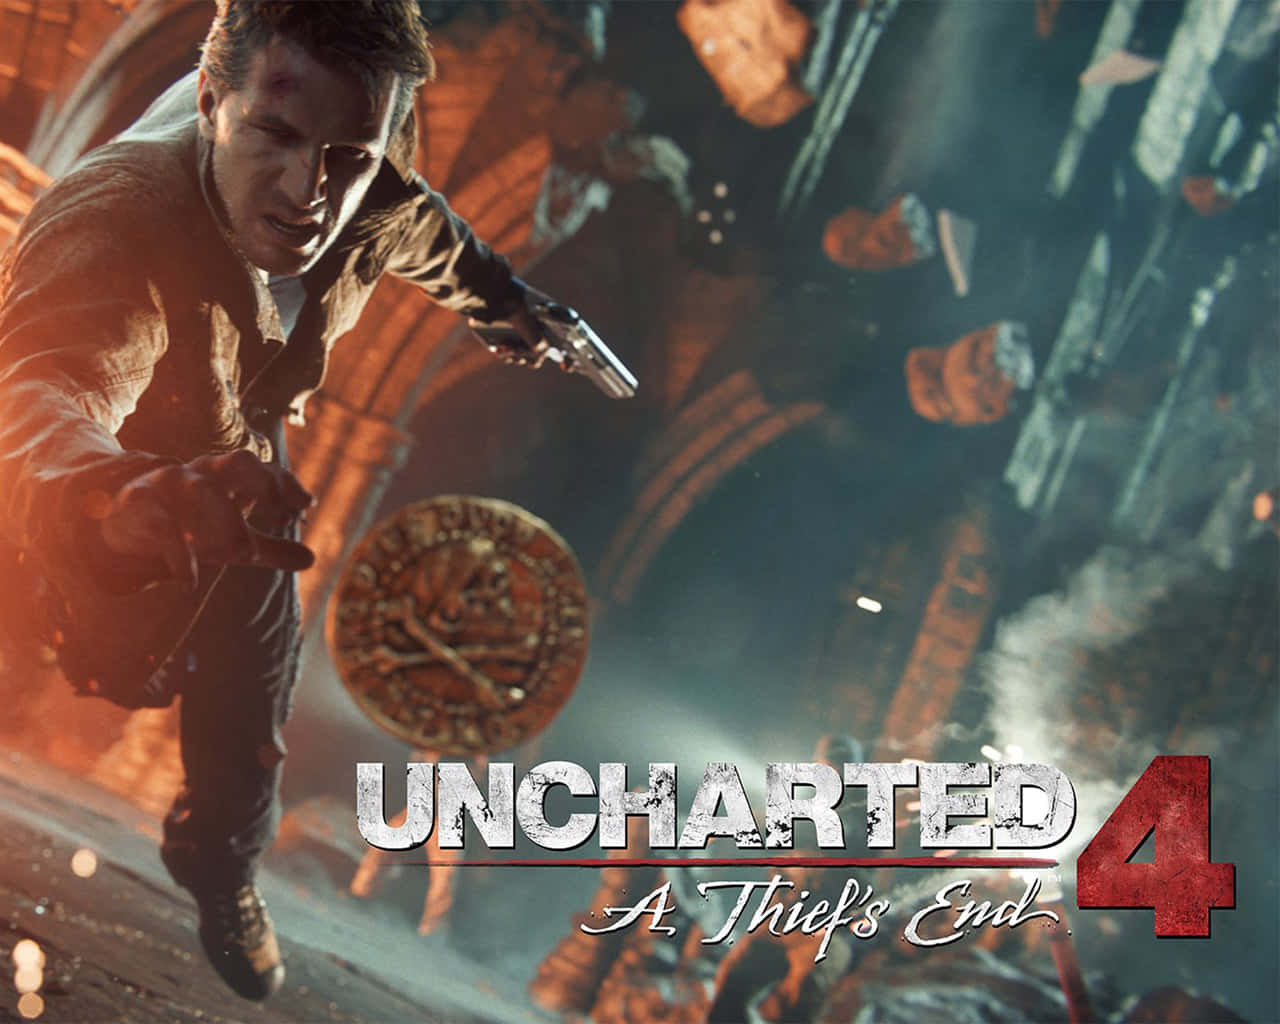 Nathan Drake løber gennem en farlig jungle i Uncharted 4. Wallpaper